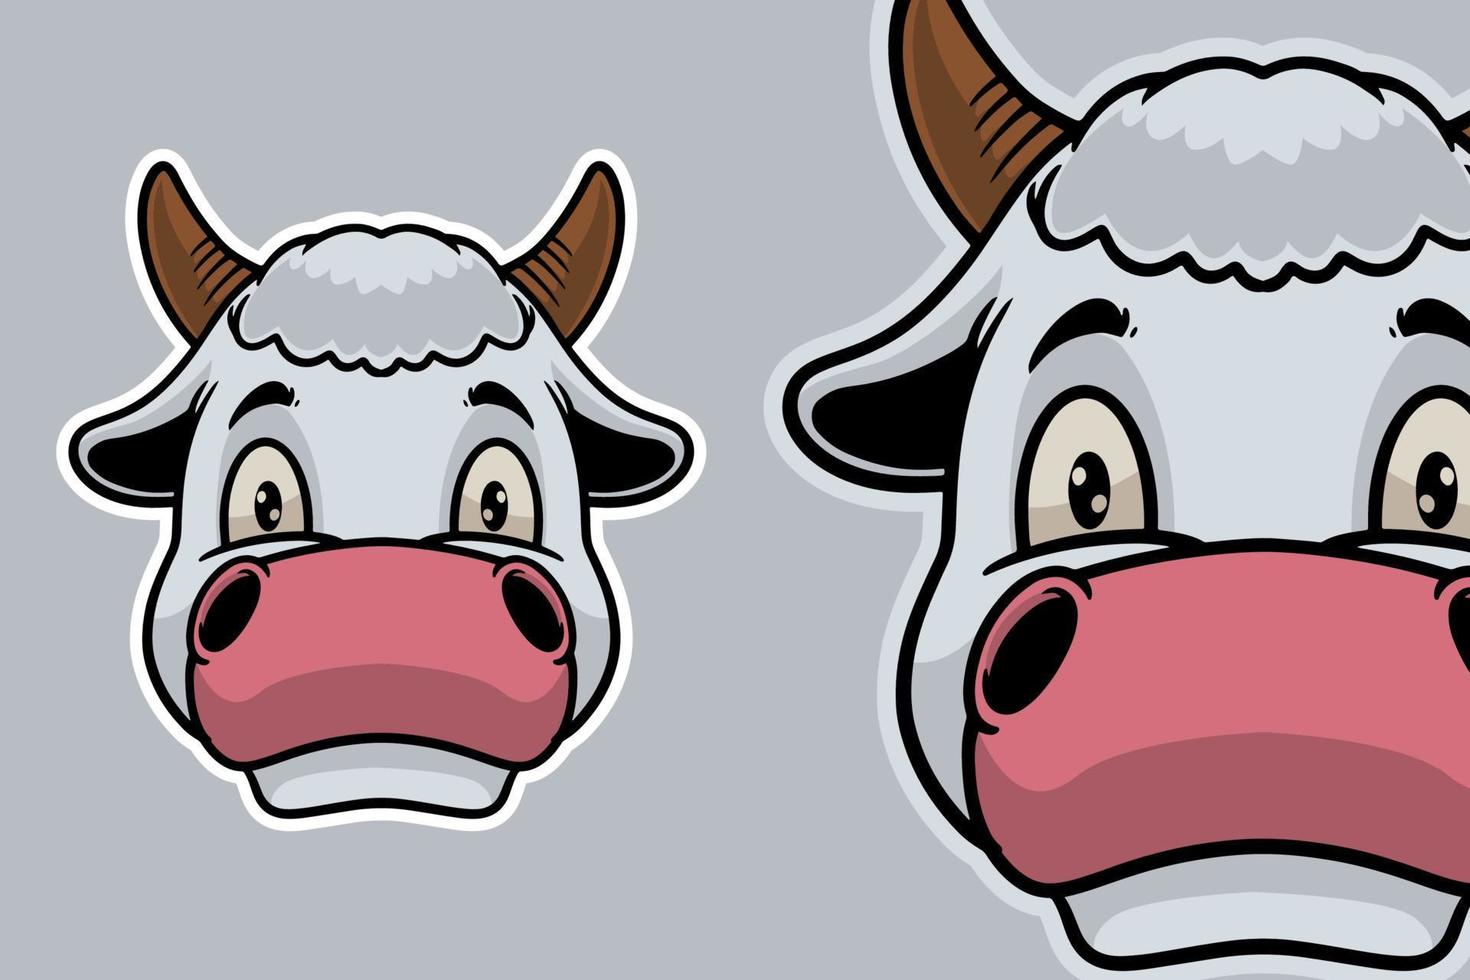 tête de vache mascotte vector illustration cartoon style